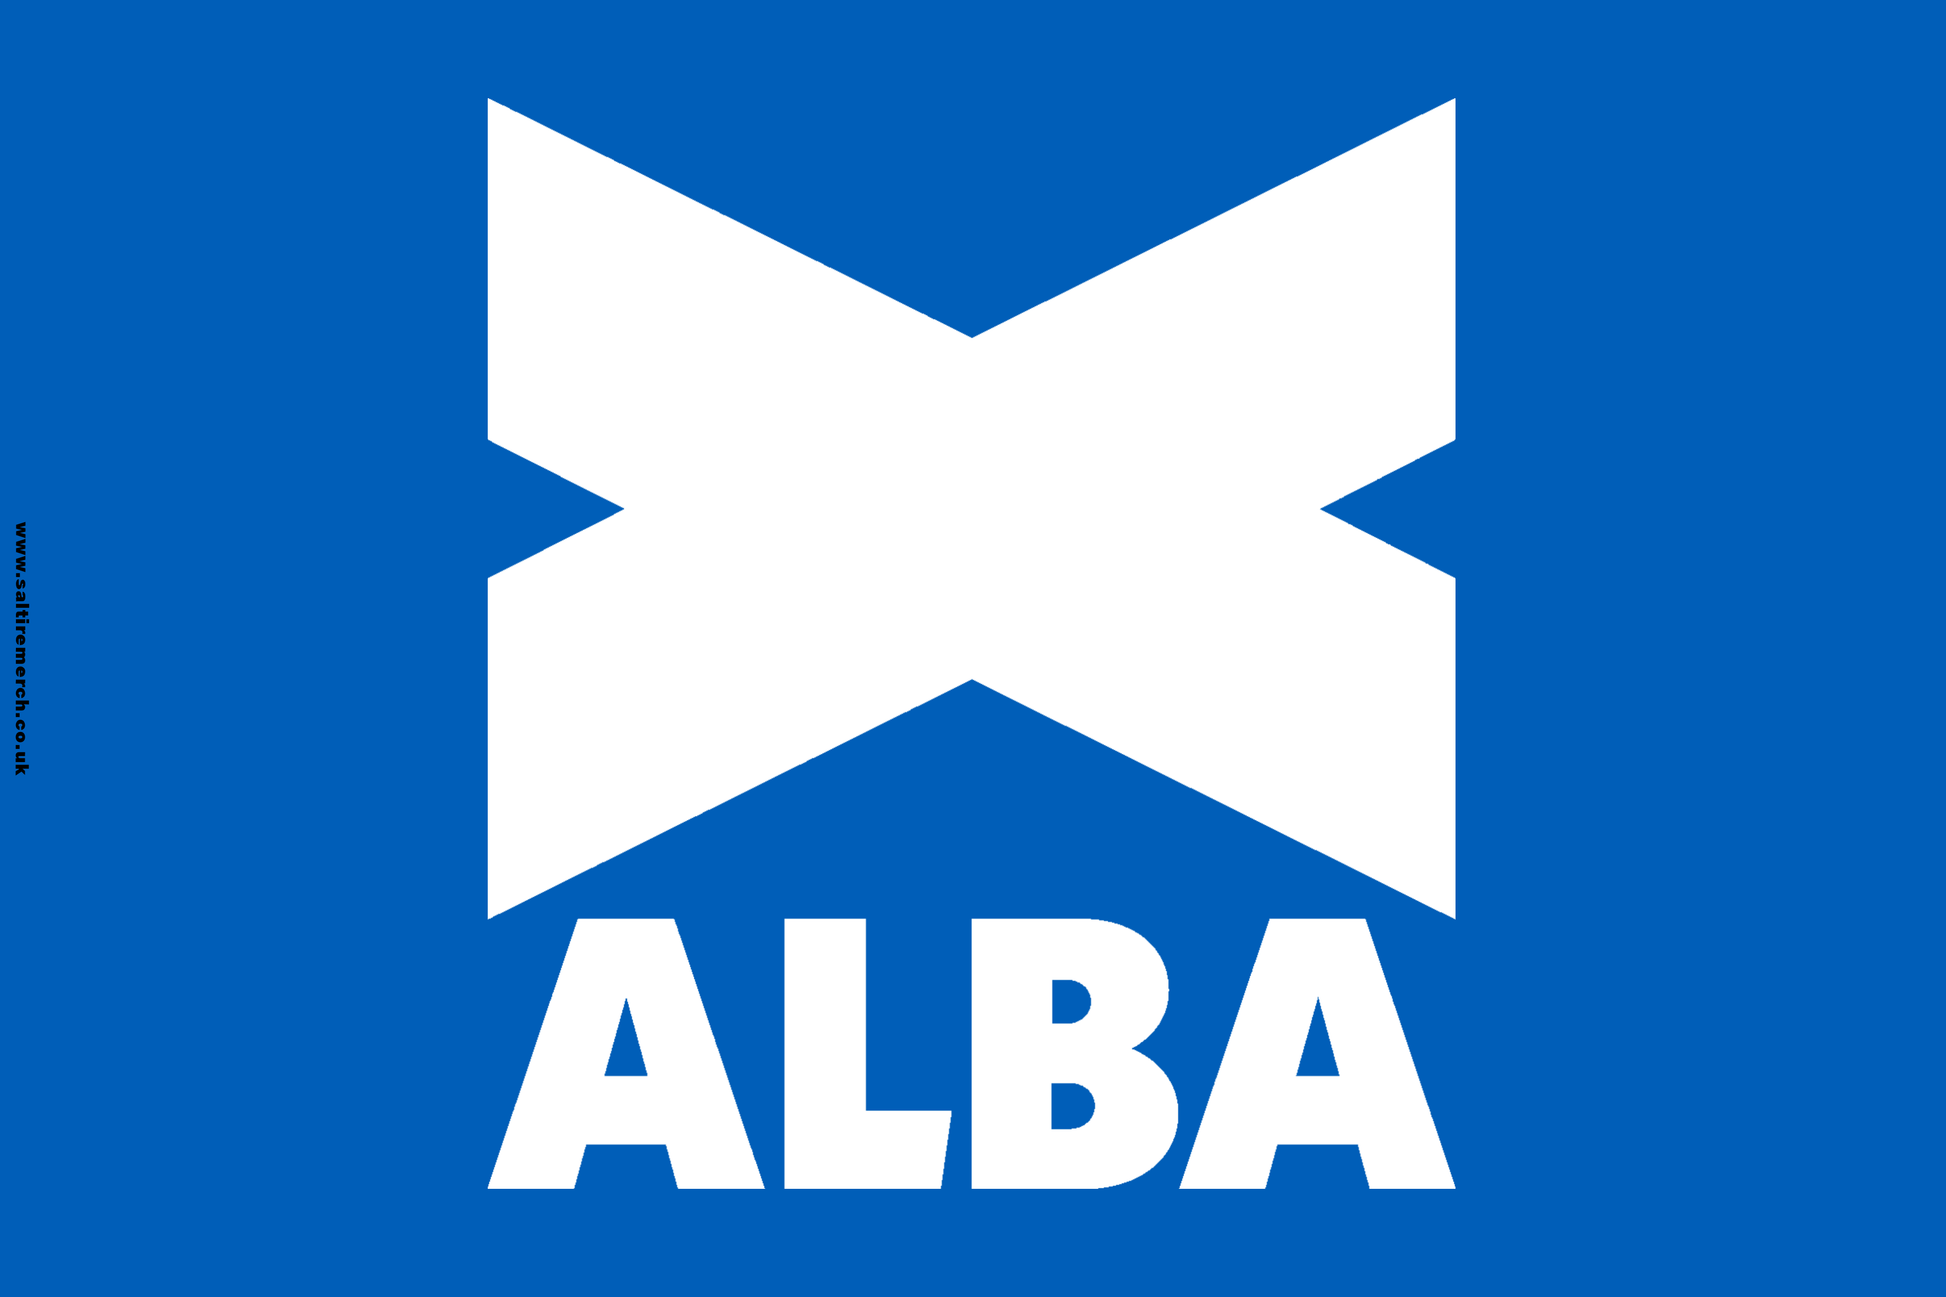 Alba party flag